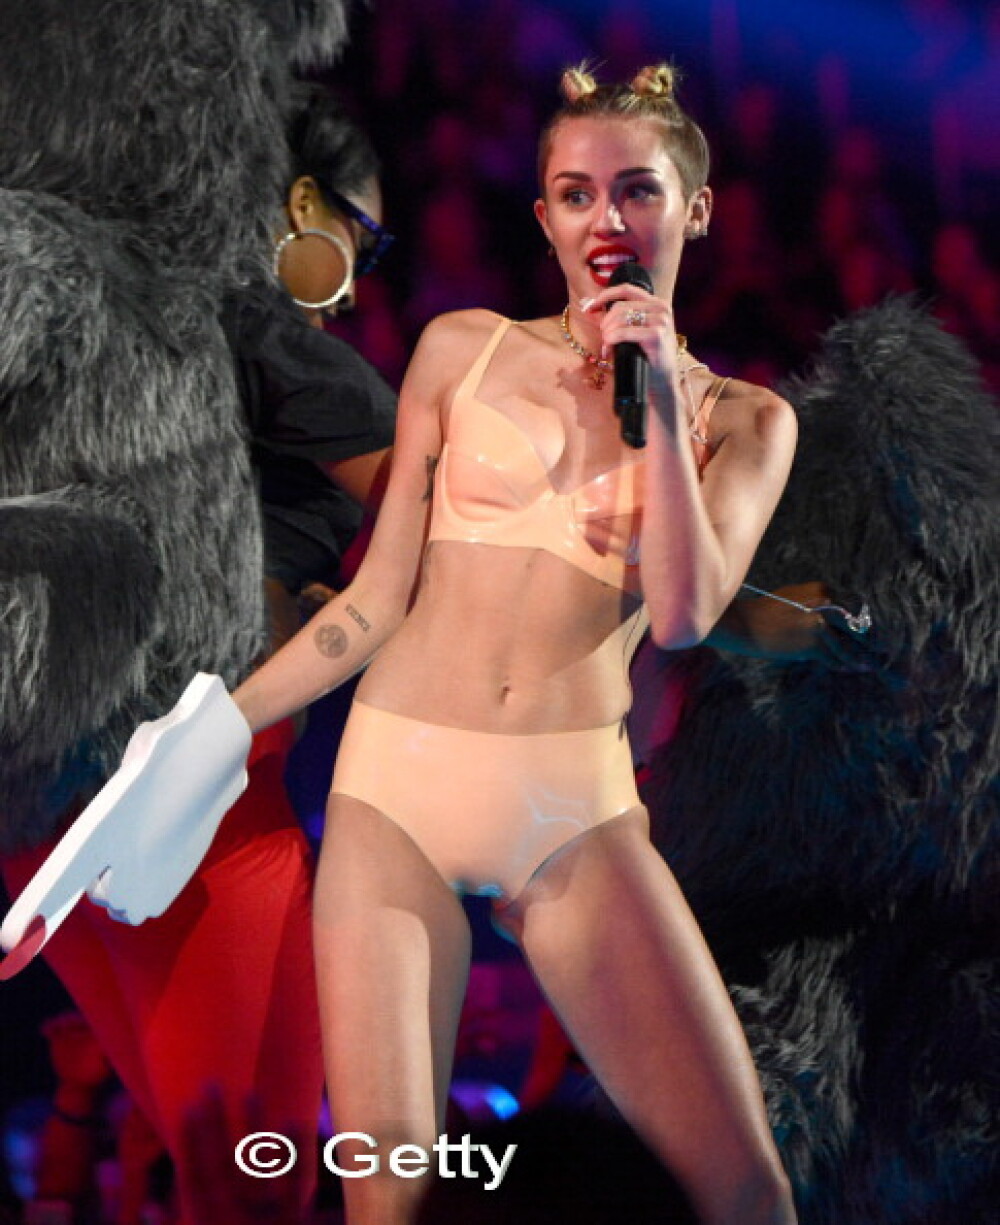 Reactia lui Liam Hemsworth dupa ce si-a vazut iubita, Miley Cyrus, in ipostaze indecente - Imaginea 4